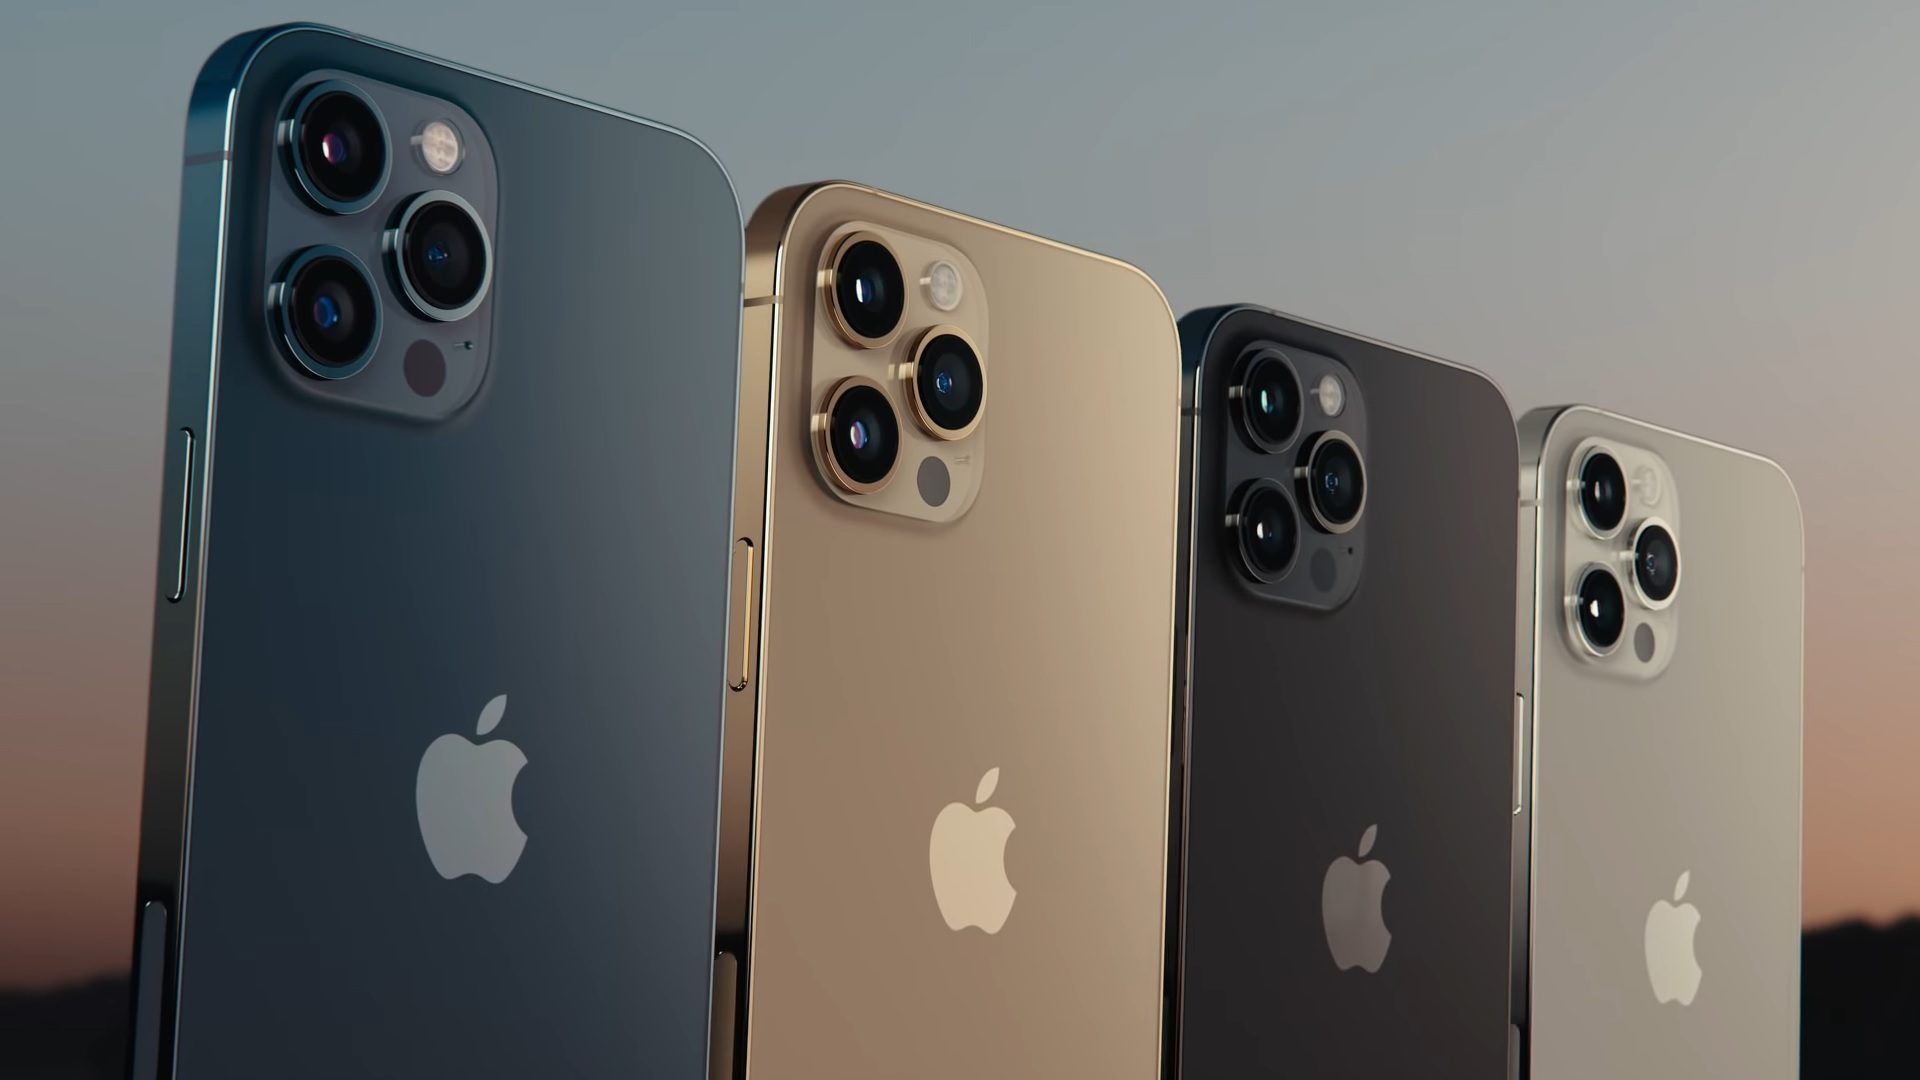 Apple-Fans müssen noch etwas warten, da das Erscheinungsdatum des iPhone 13 noch unbekannt ist